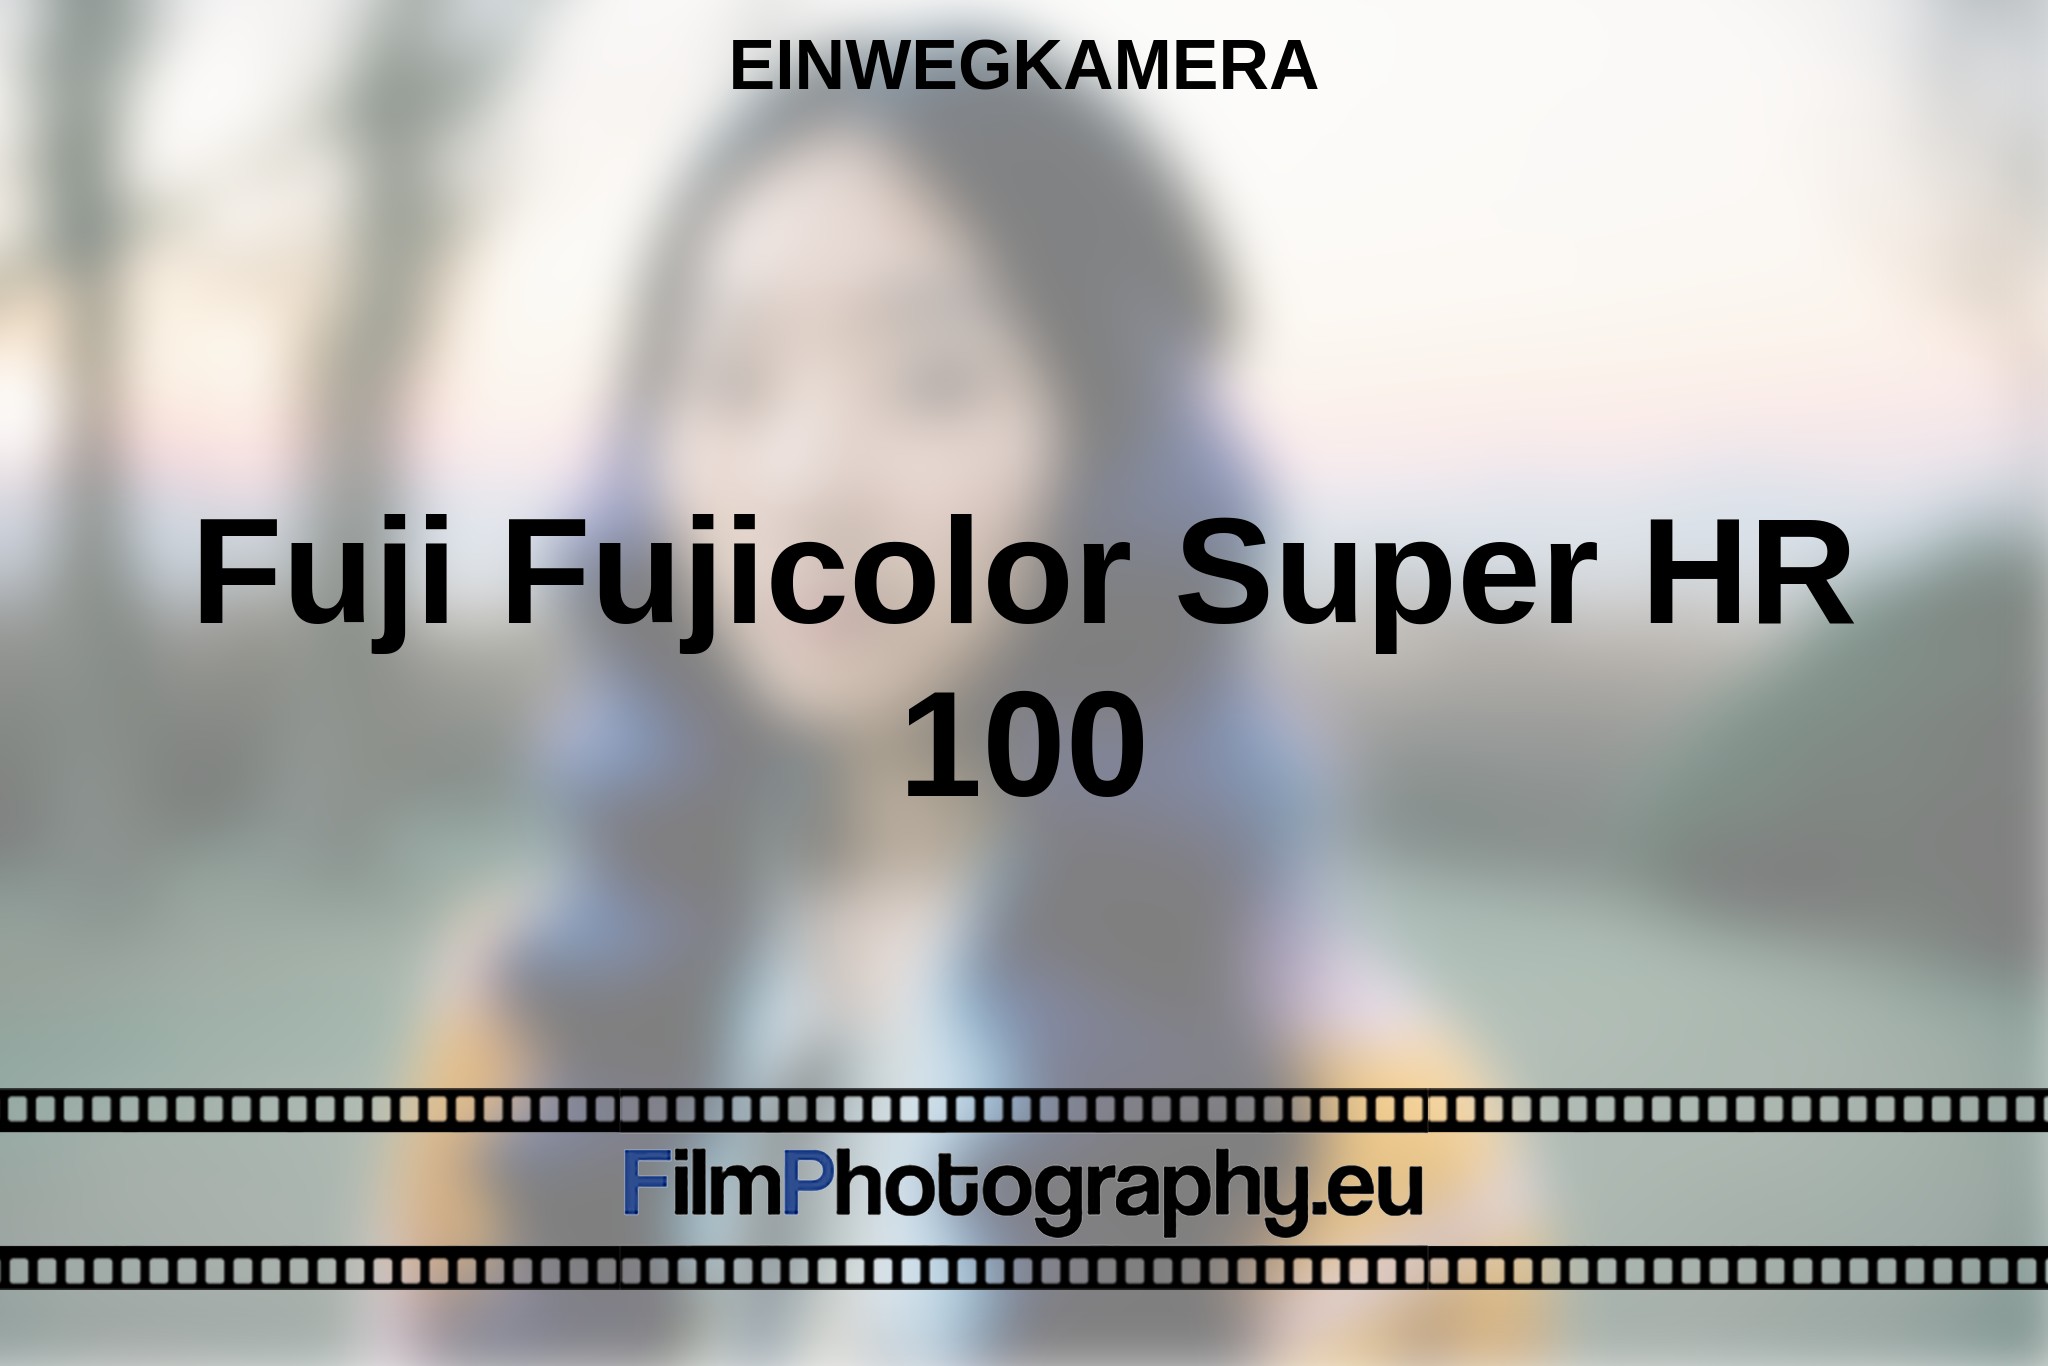 fuji-fujicolor-super-hr-100-einwegkamera-bnv.jpg